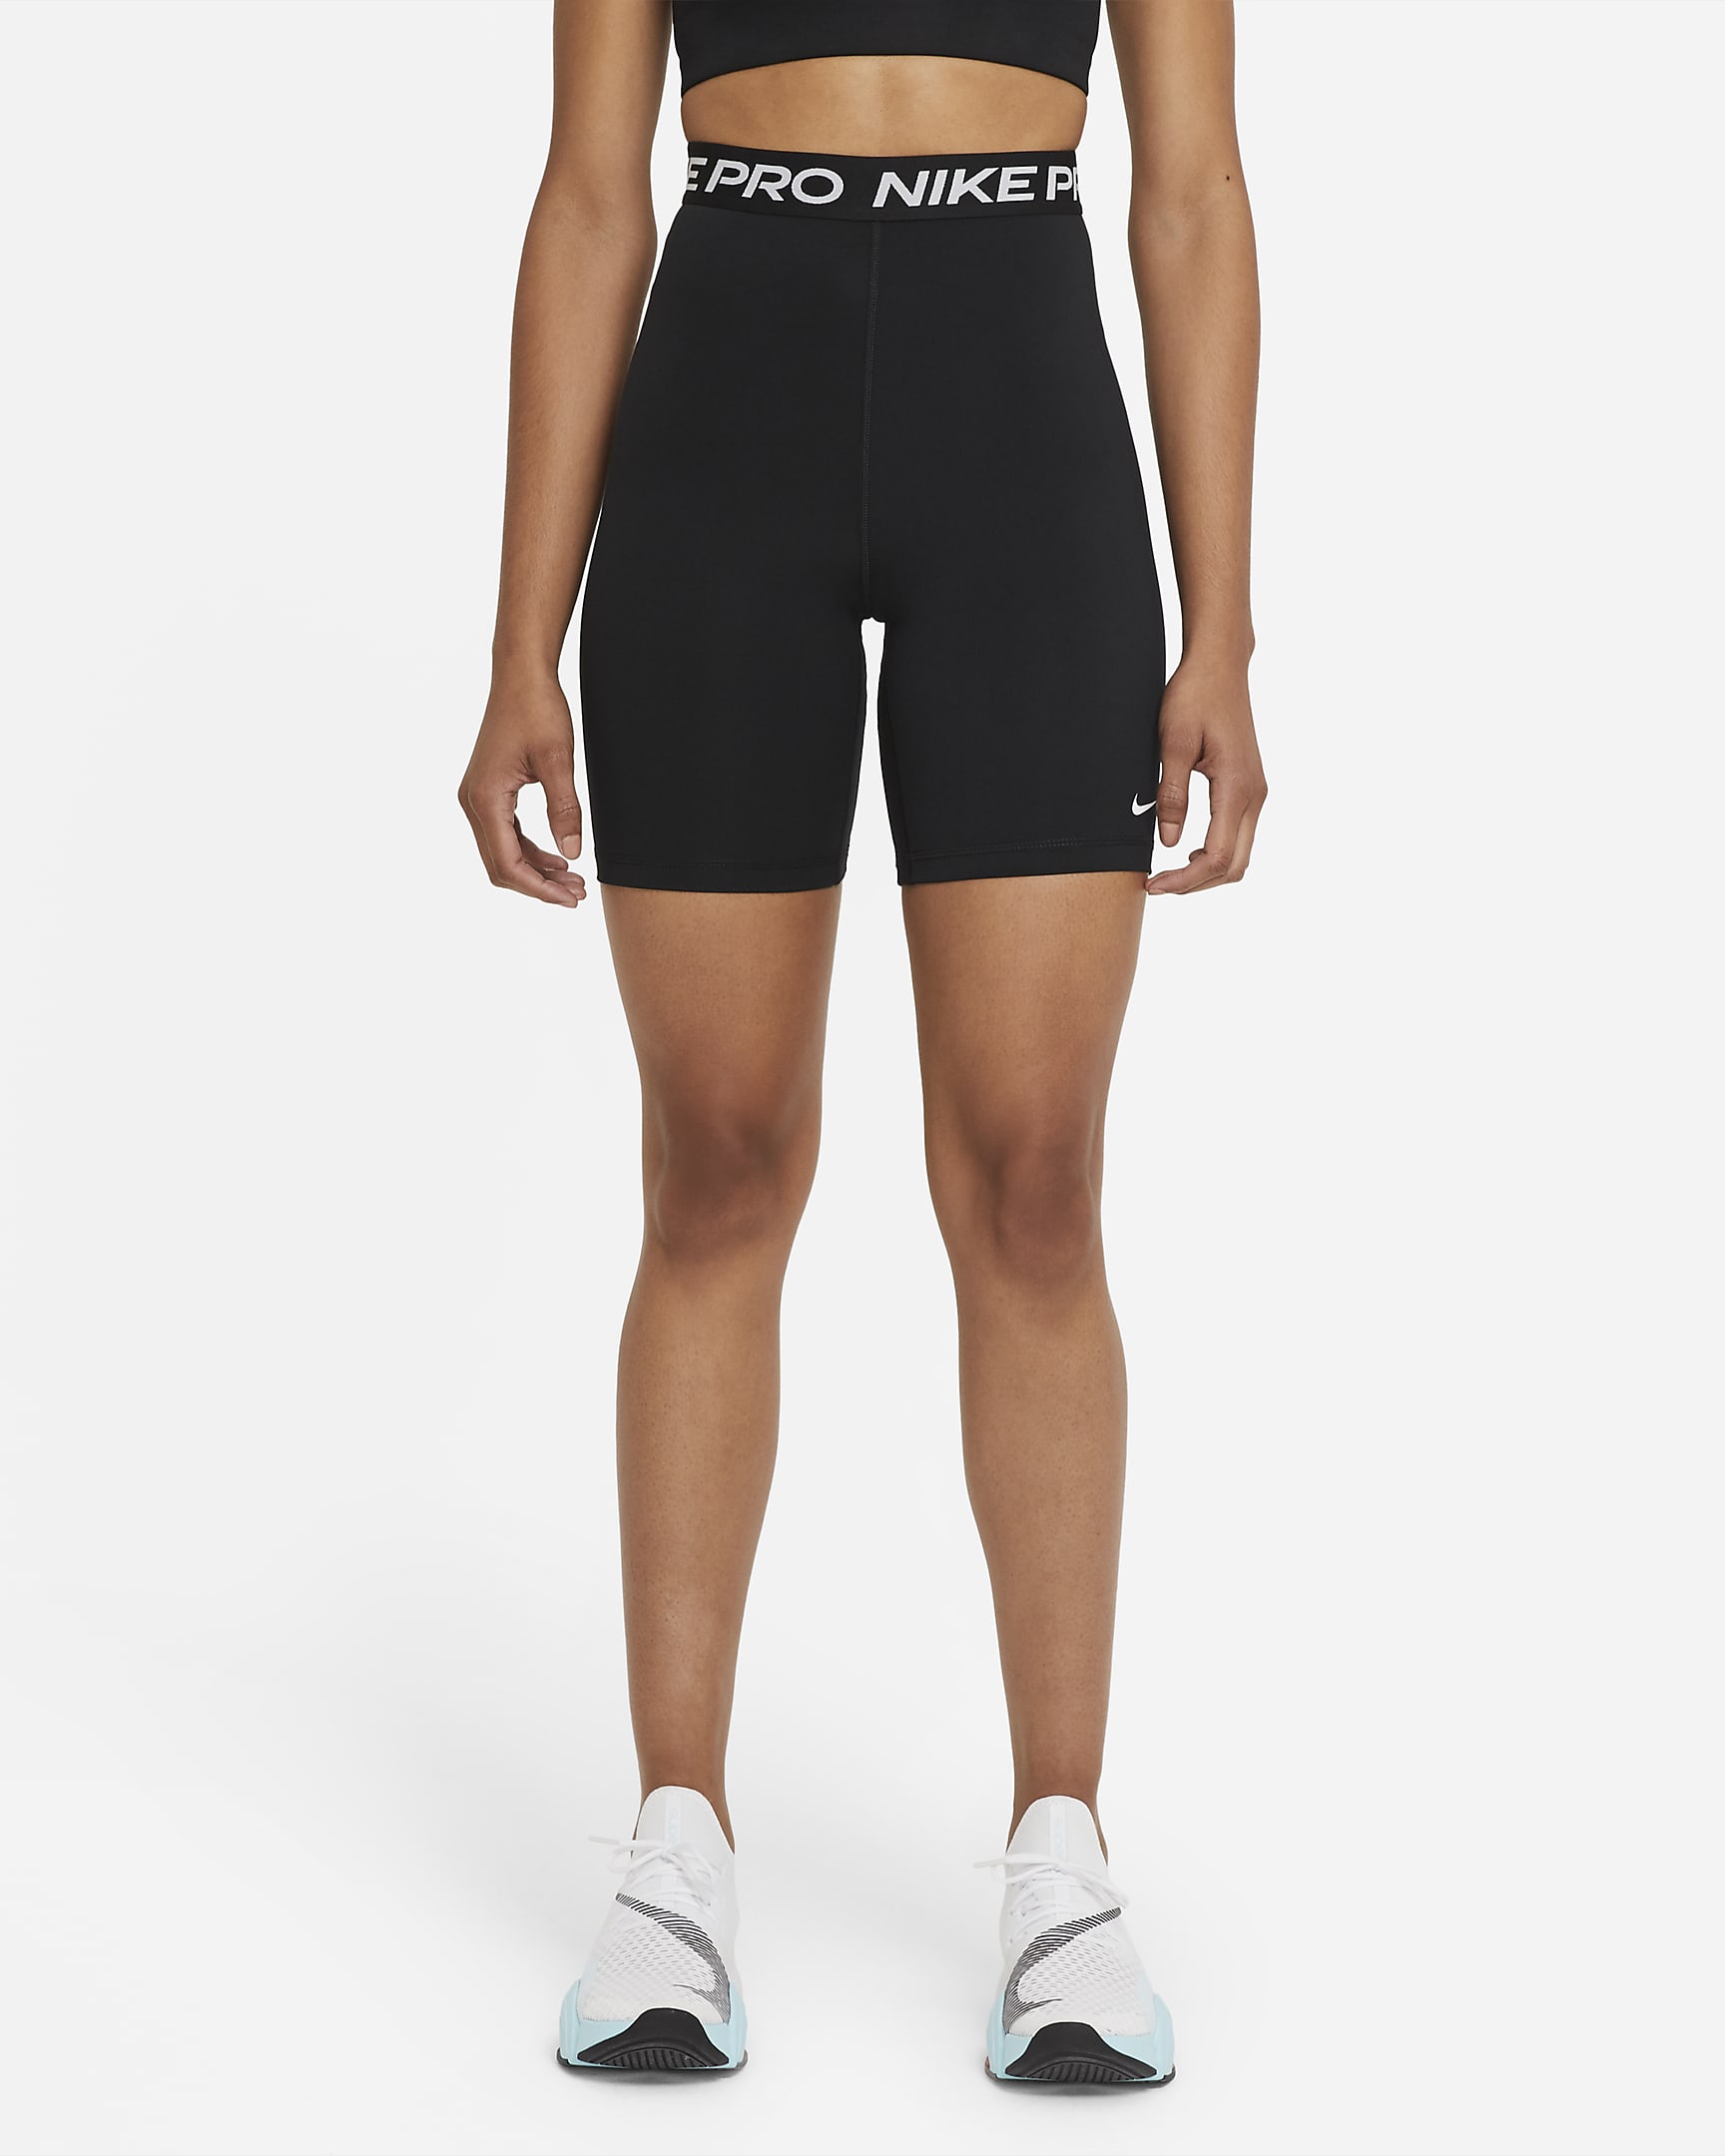 Shorts 18 cm a vita alta Nike Pro 365 – Donna - Nero/Bianco